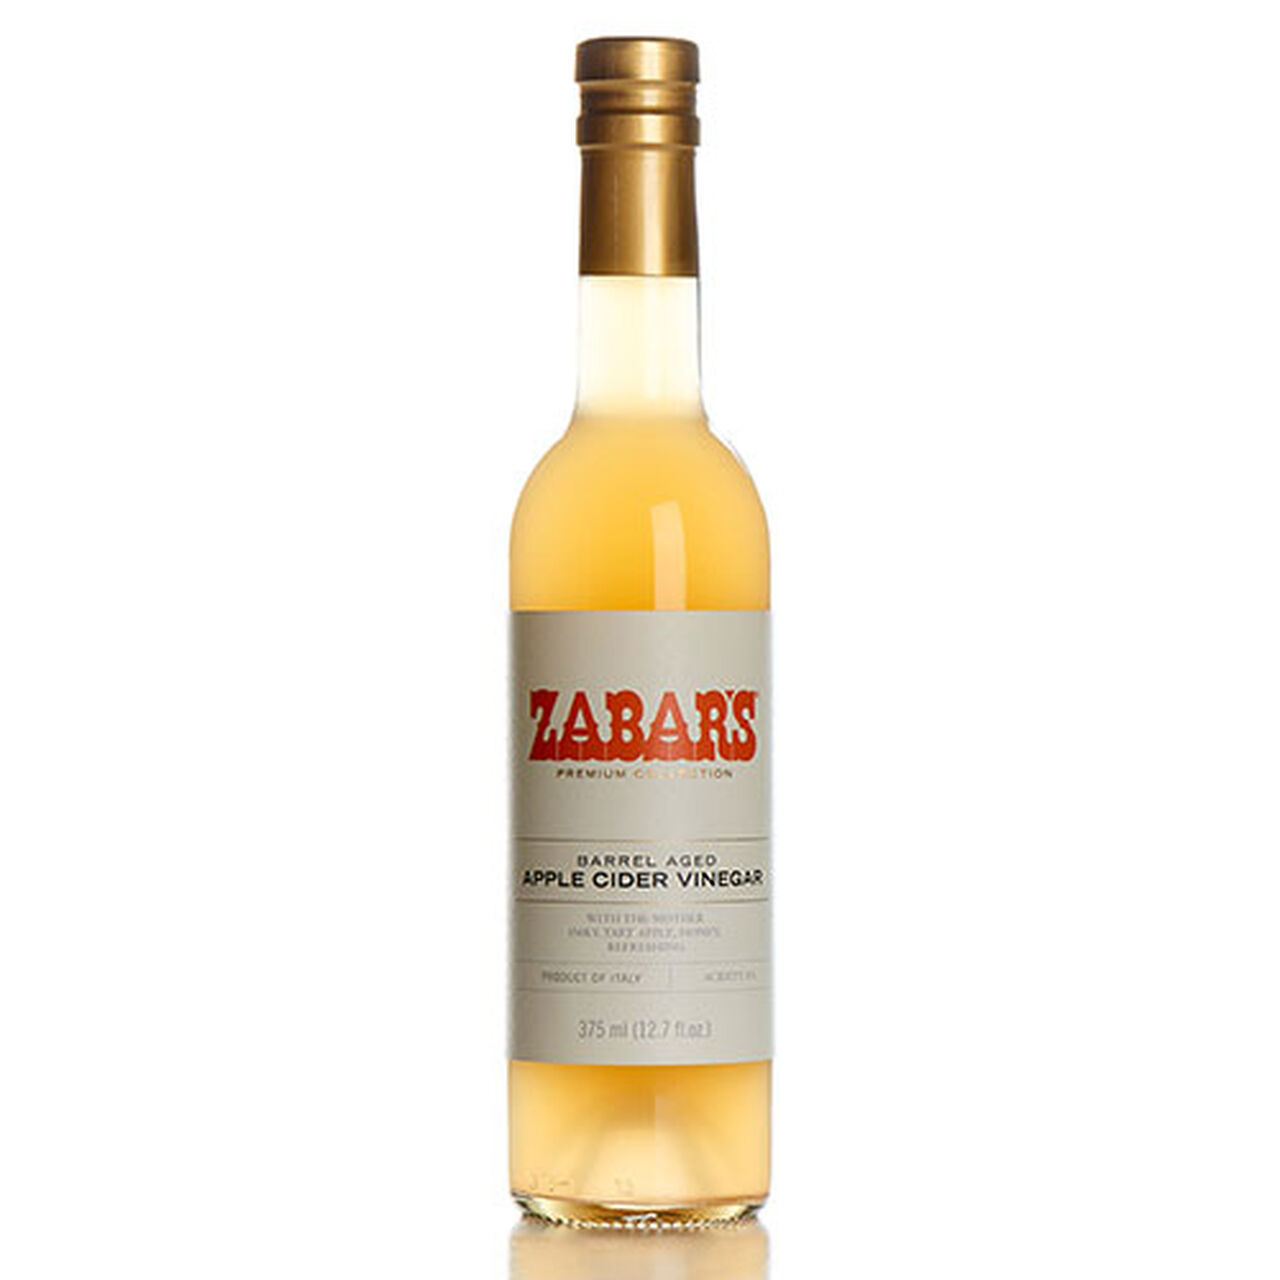 Zabar's Premium Collection Barrel Aged Apple Cider Vinegar 12.7 fl. oz., , large image number 0